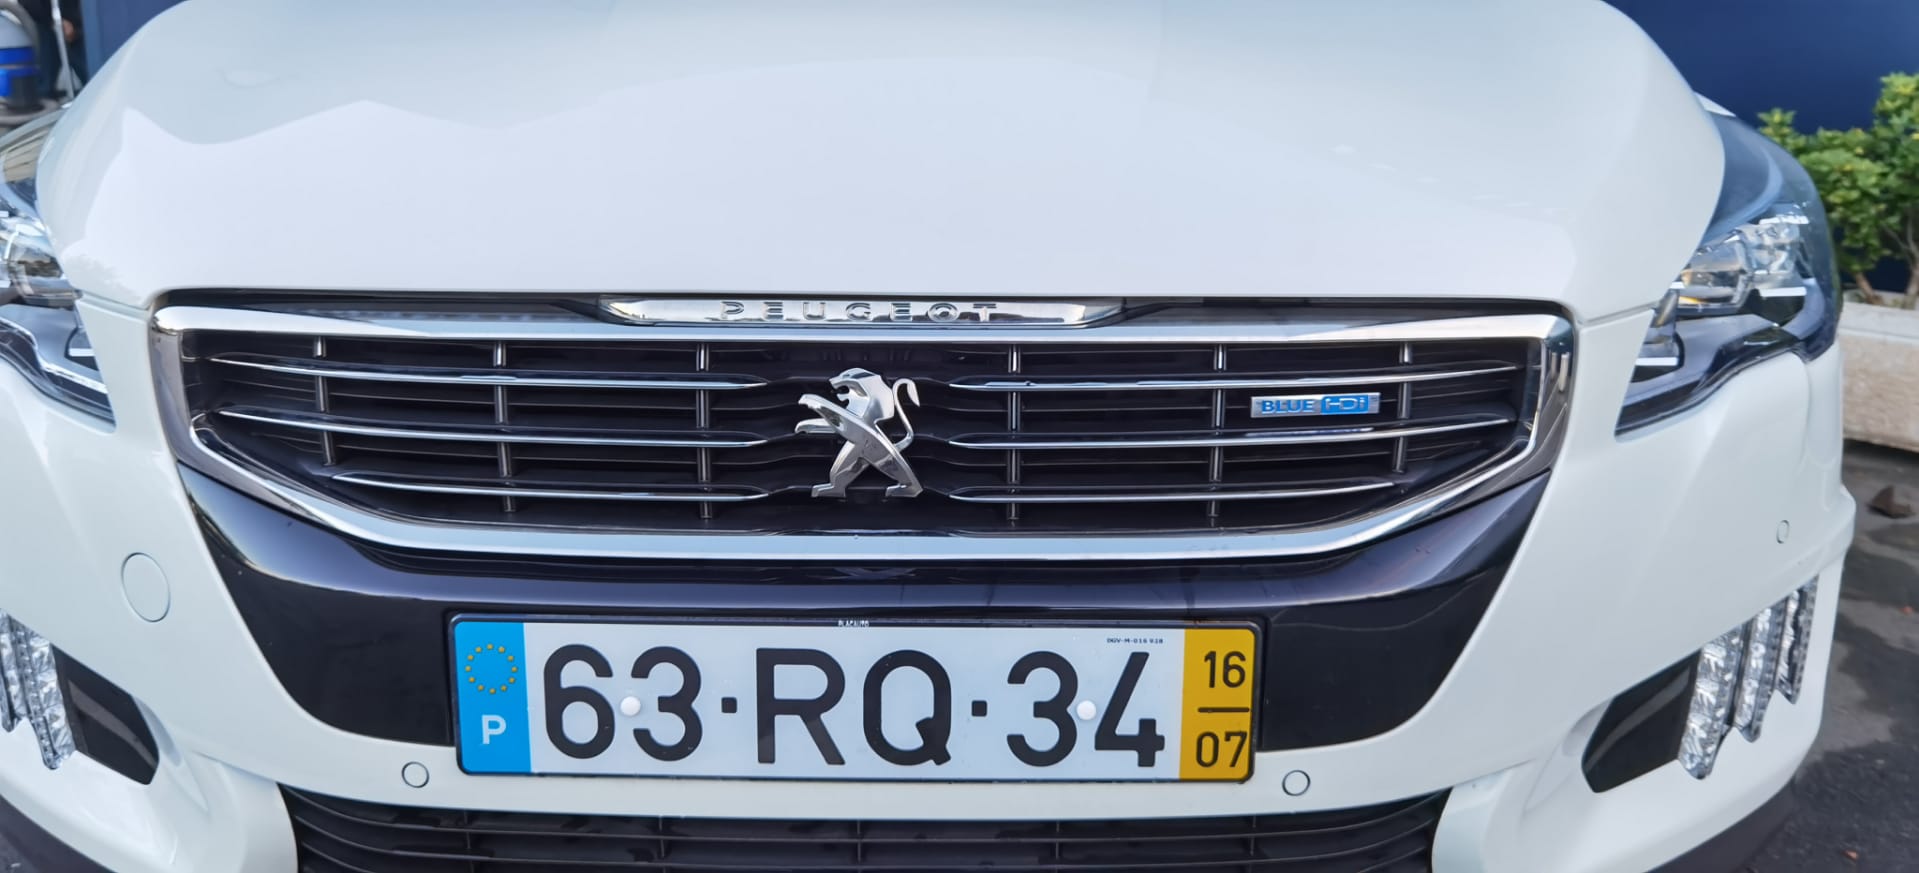 Peugeot 508 RXH 2.0 HDI